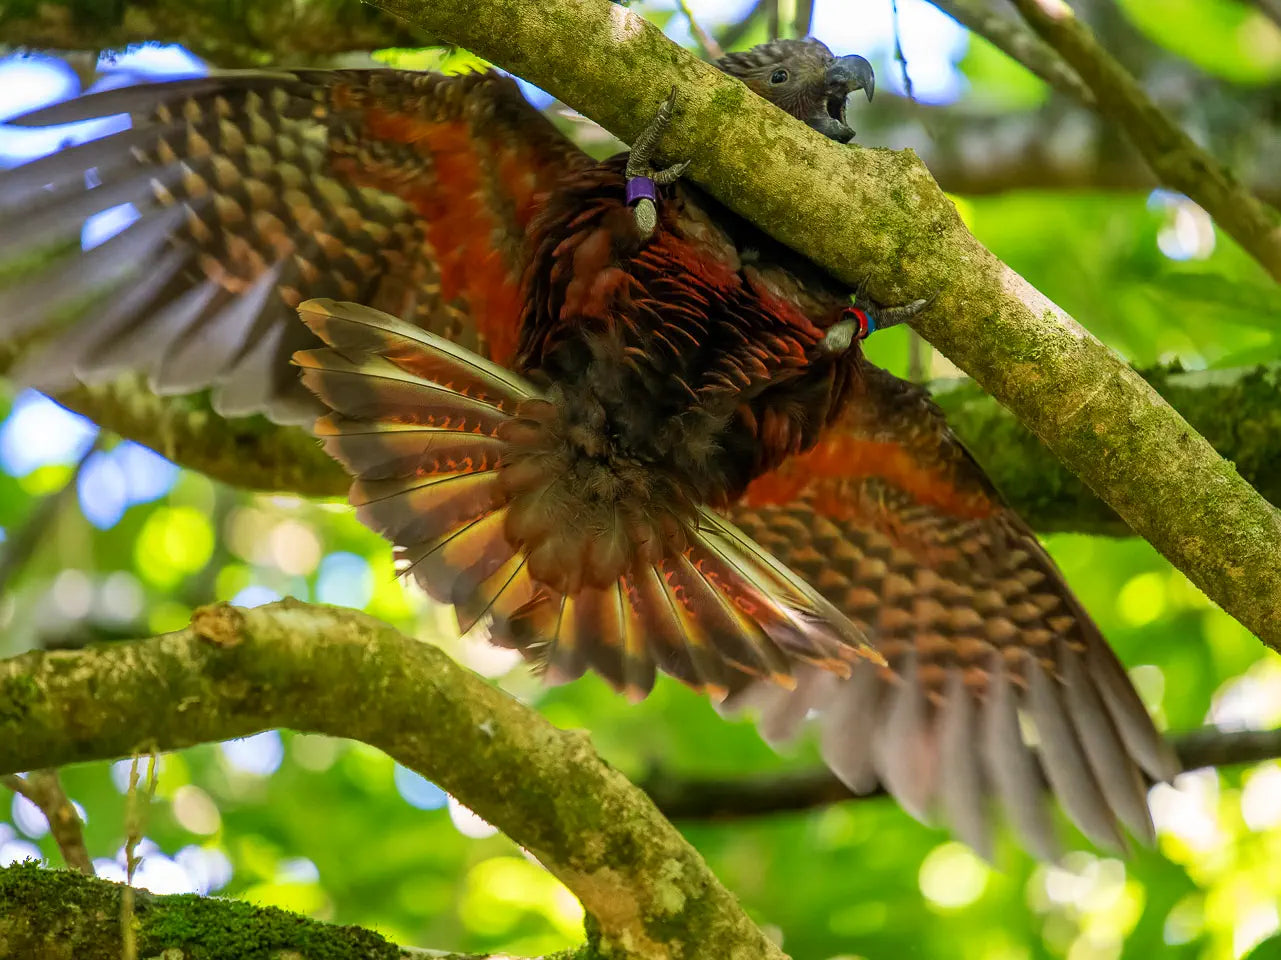 baby kaka falling from branch, wings spread